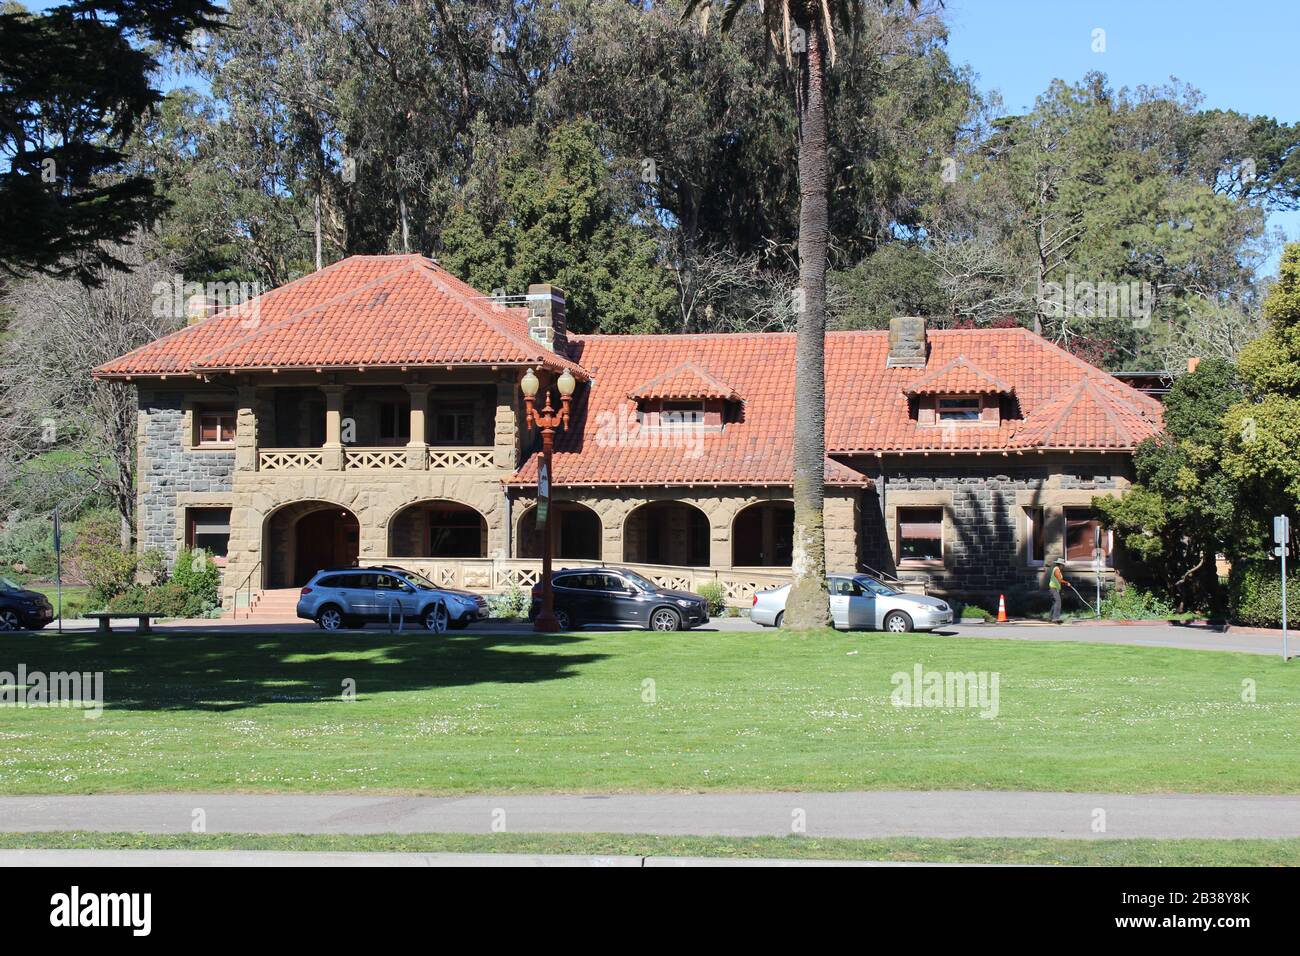 Mclaren Lodge Construit 1893, Golden Gate Park, San Francisco, Californie Banque D'Images